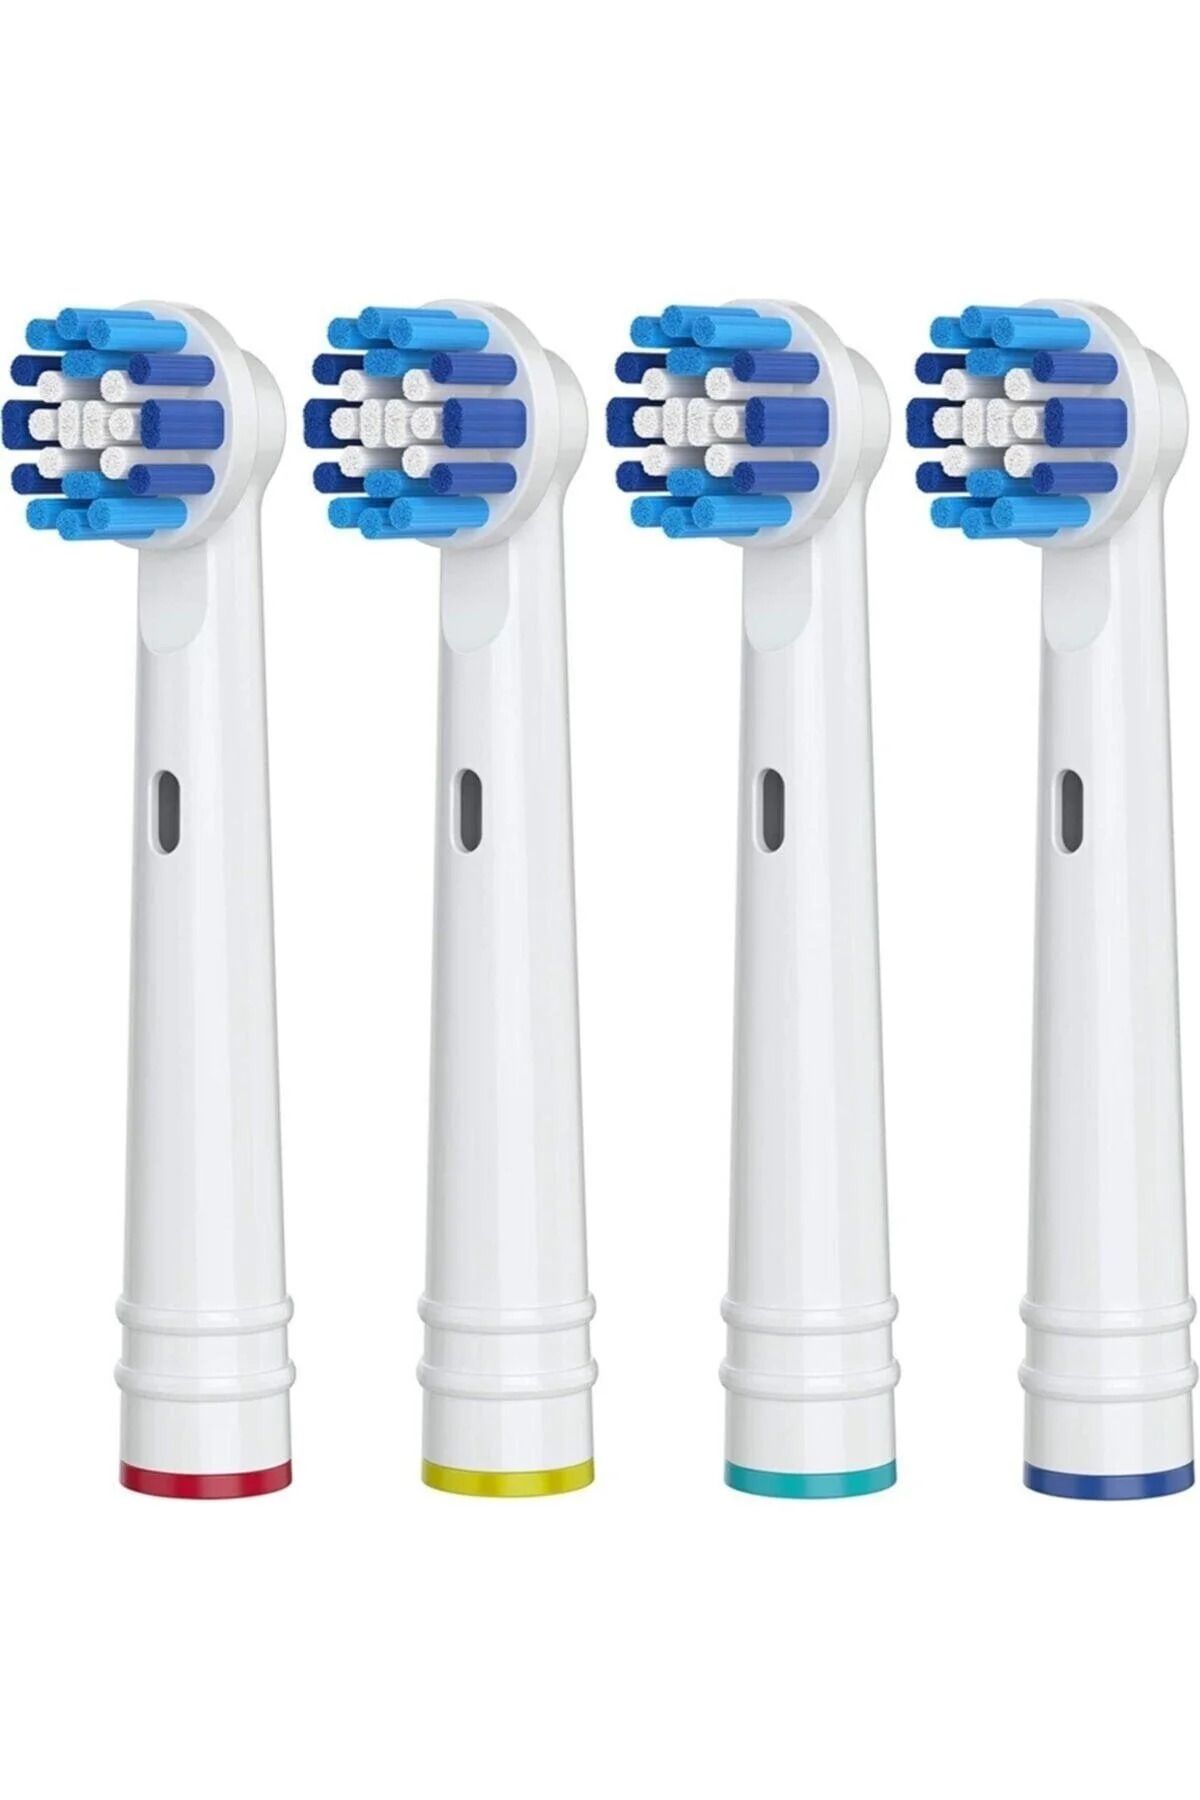 Toocare Şarjlı Diş Fırçası Oral B Uyumlu Braun Elektrikli Diş Fırçası Ve Şarjlı Diş Fırçası Başlığı